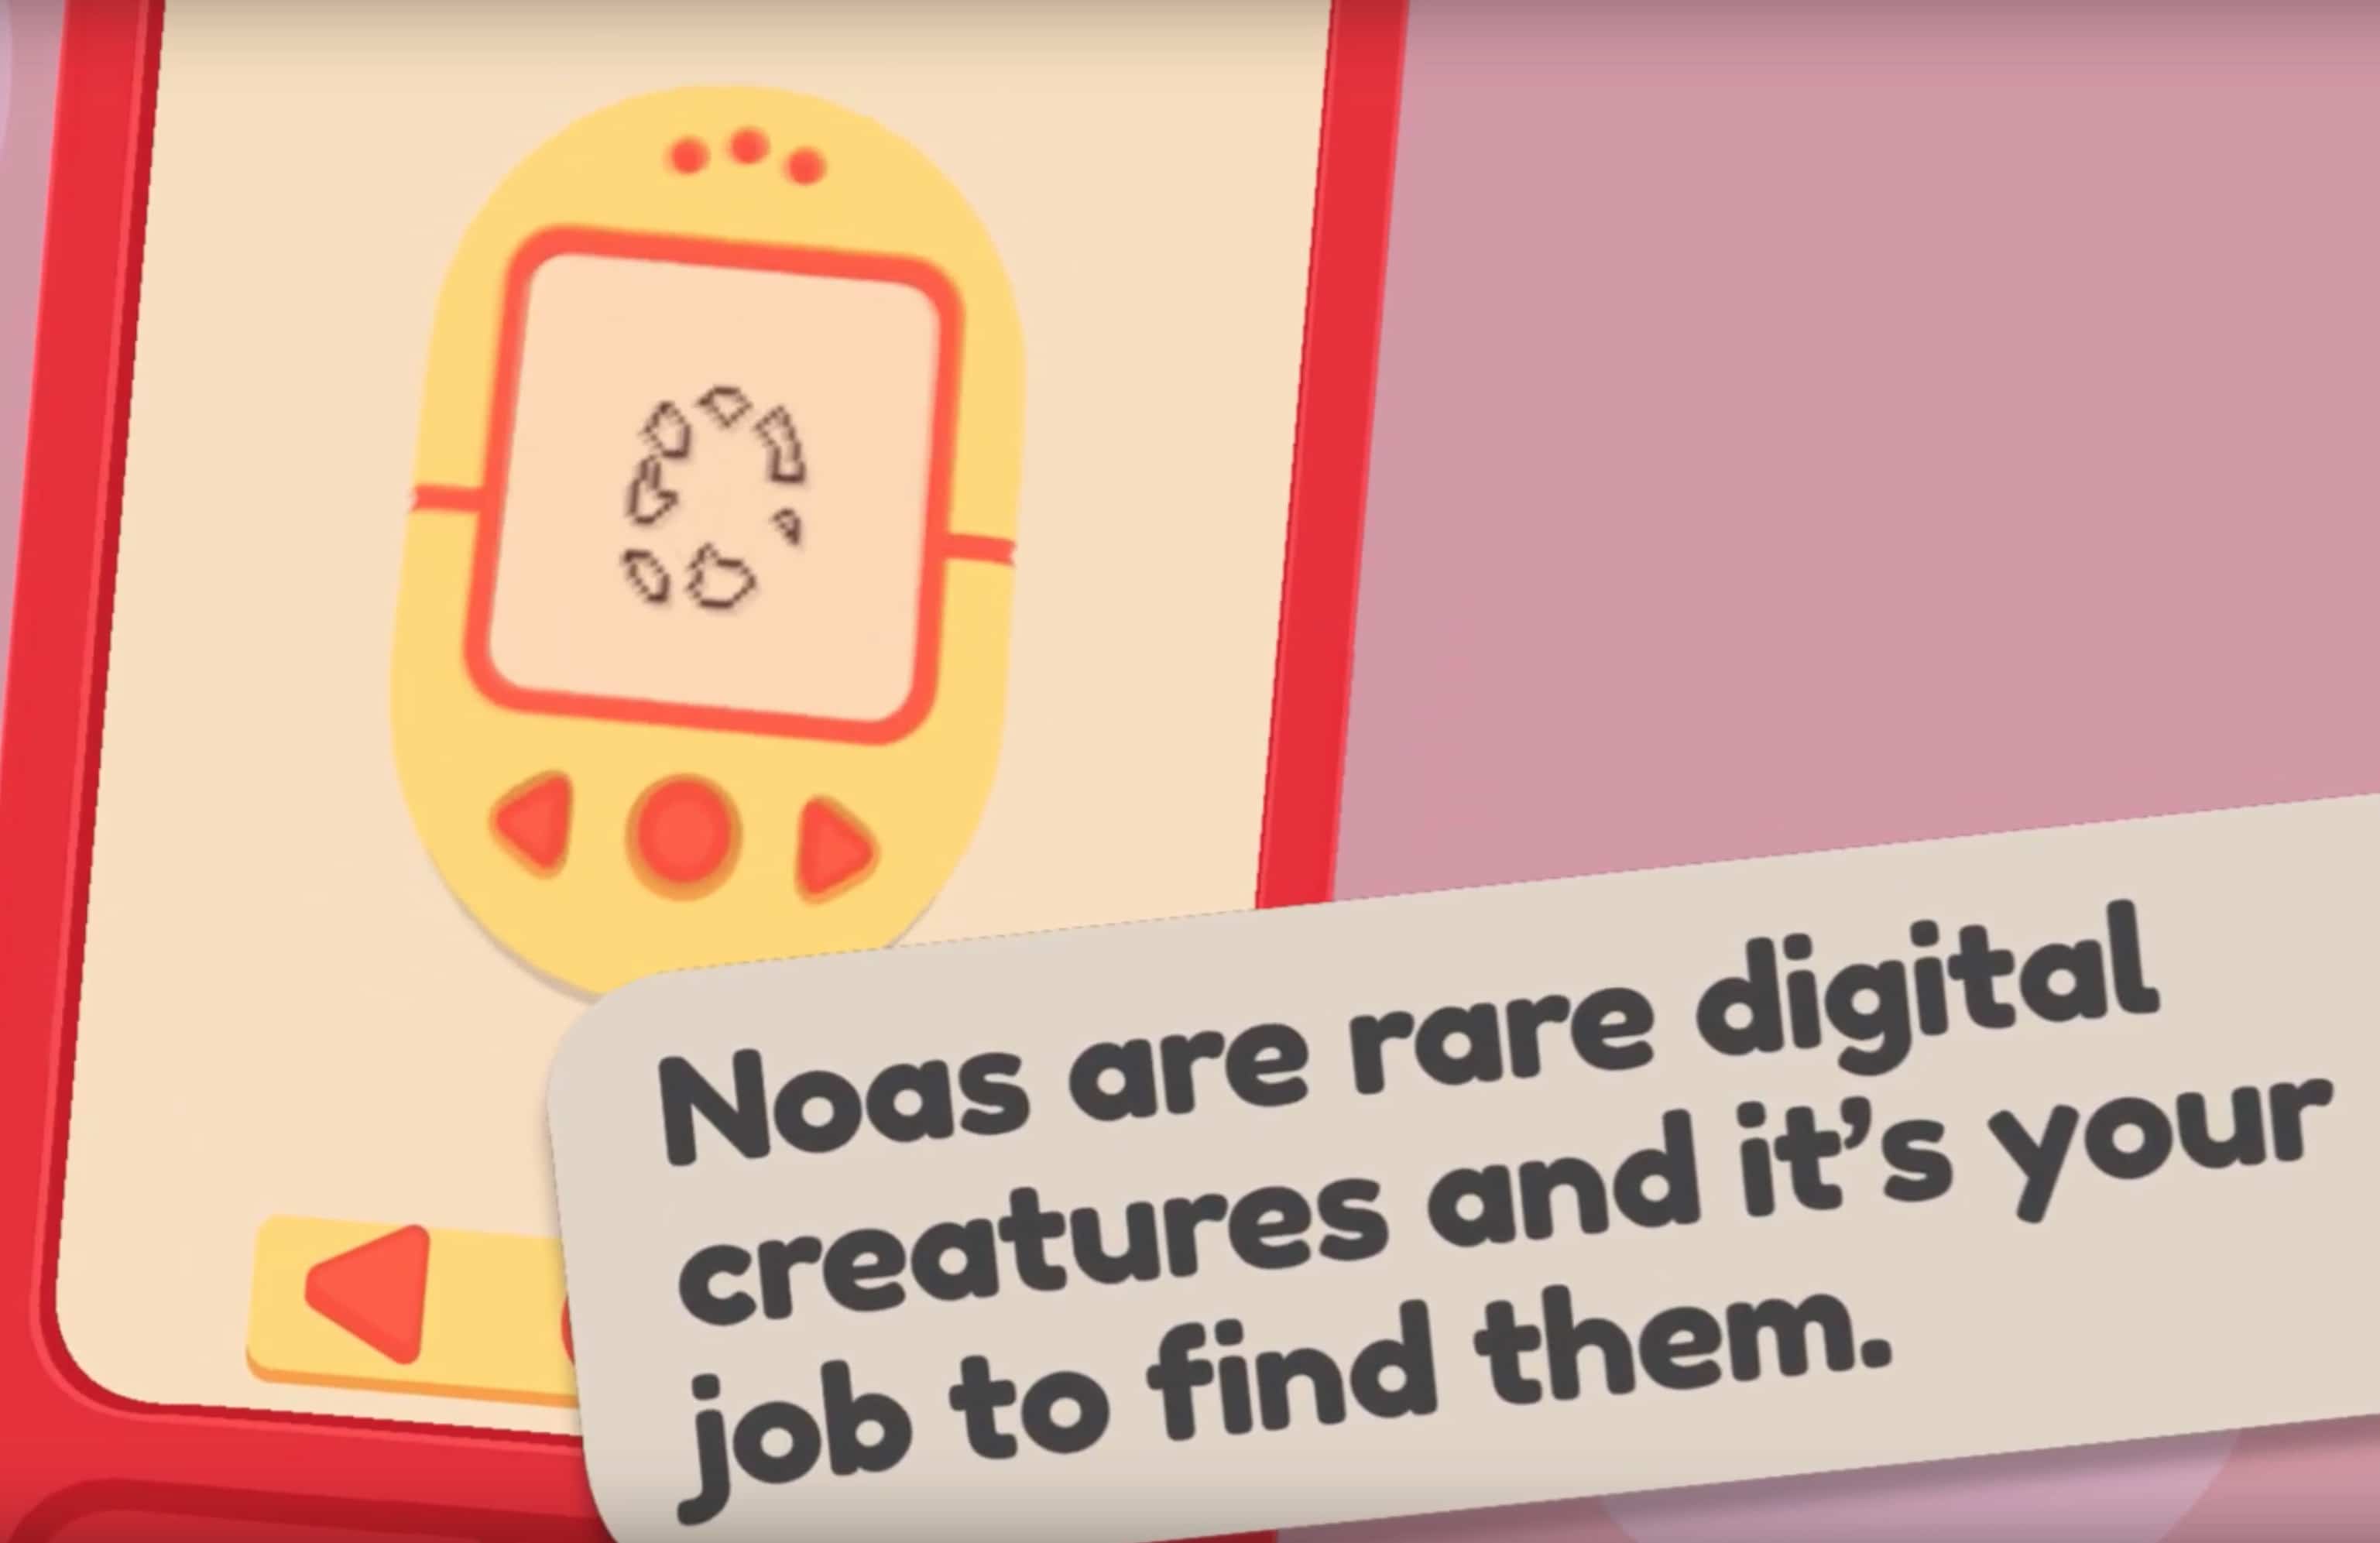 Noa Noa! A virtual pet simulator for iOS and Android!